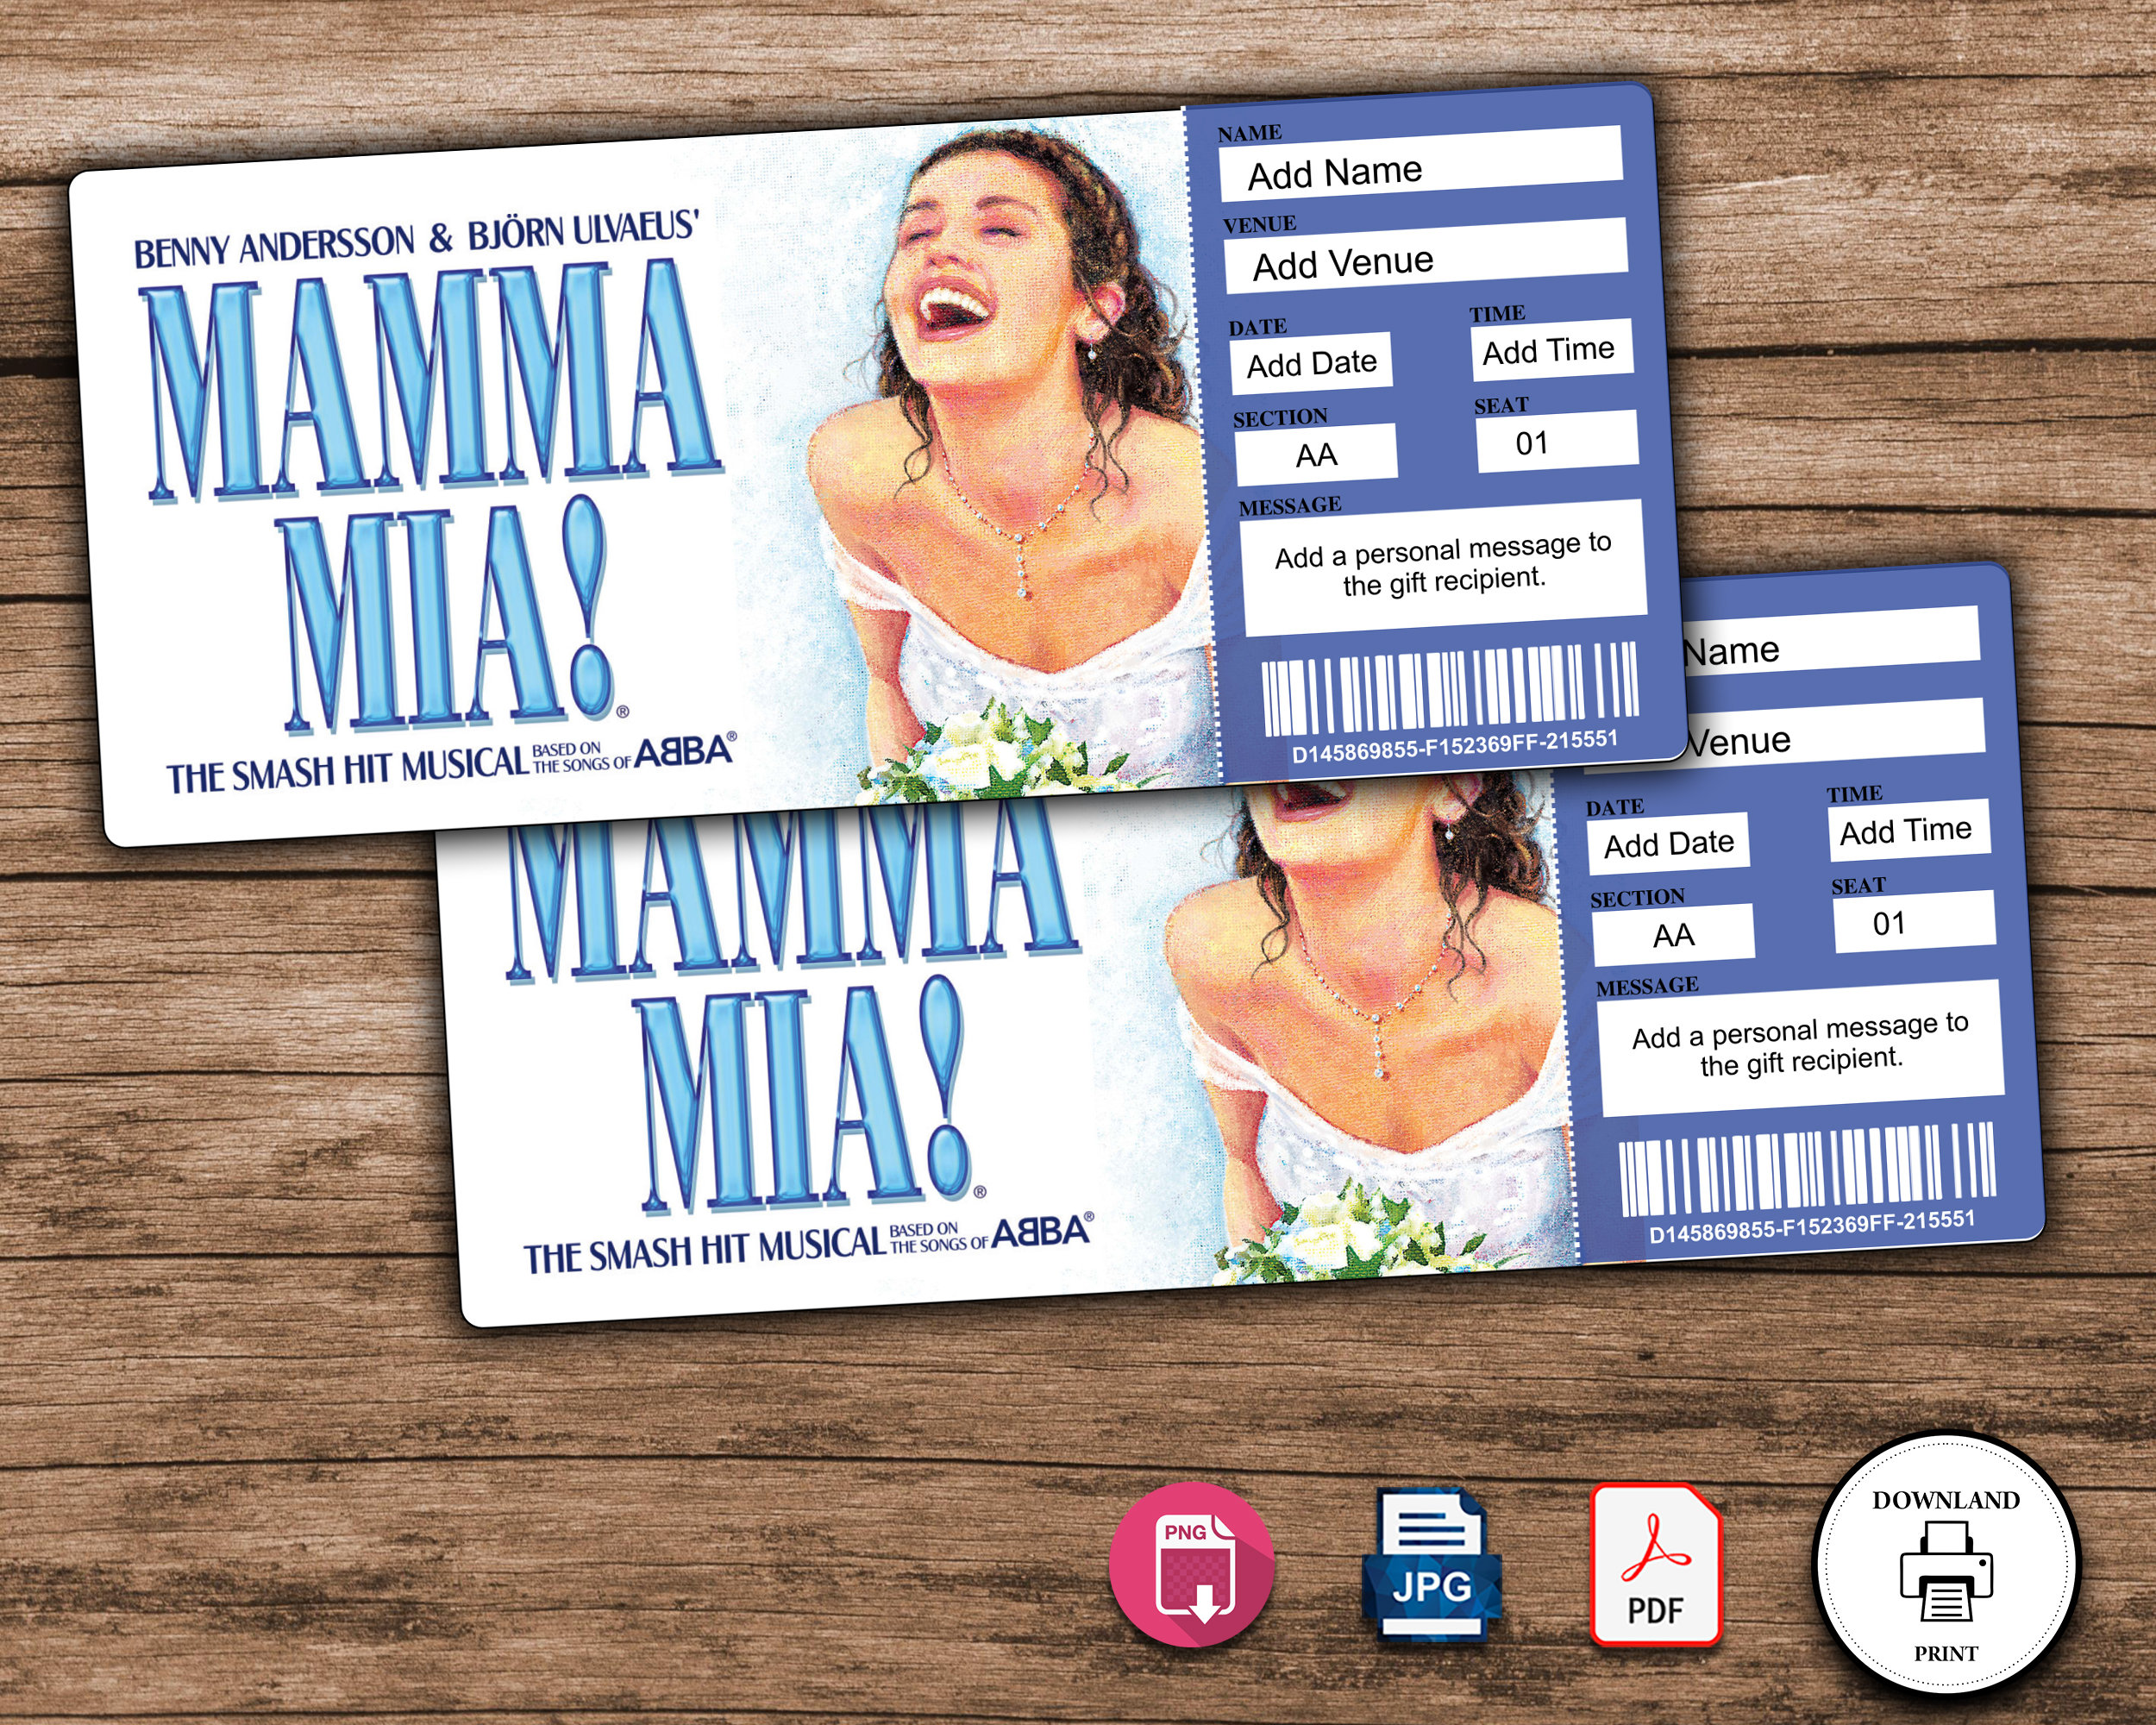 Mamma mia! Themed party decor✨ #mammamia #fyp #decor #birthdayparty #m, Mamma  Mia